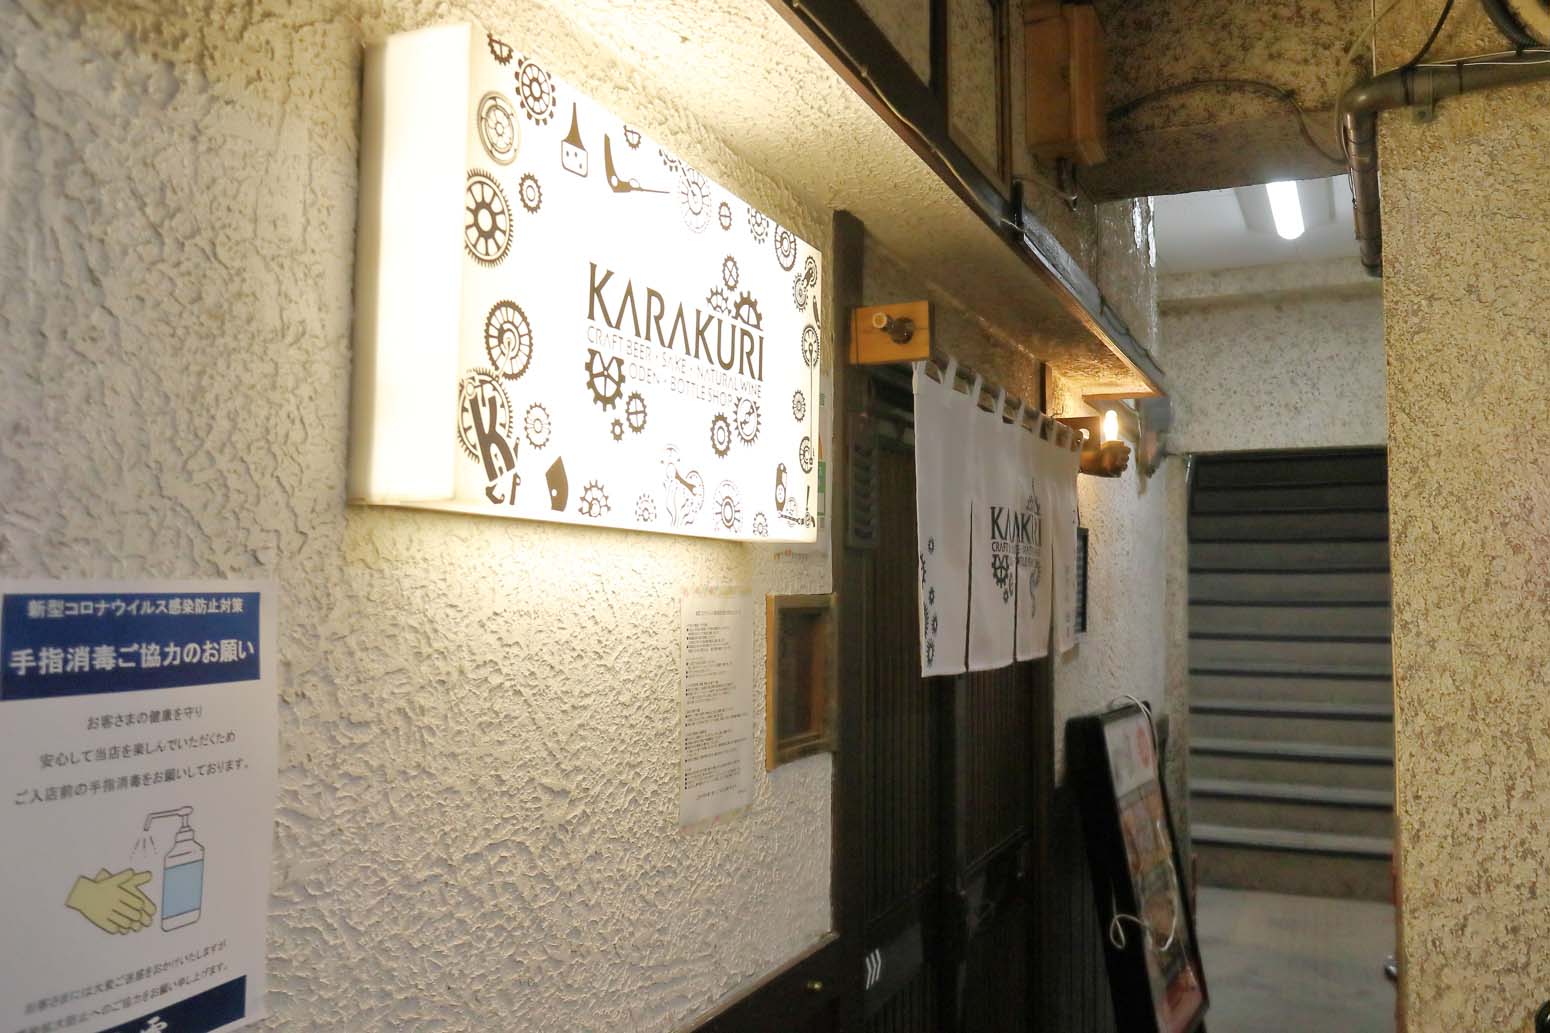 神田の Karakuri は おでんを肴にクラフトビールを味わえる店 さんたつ By 散歩の達人